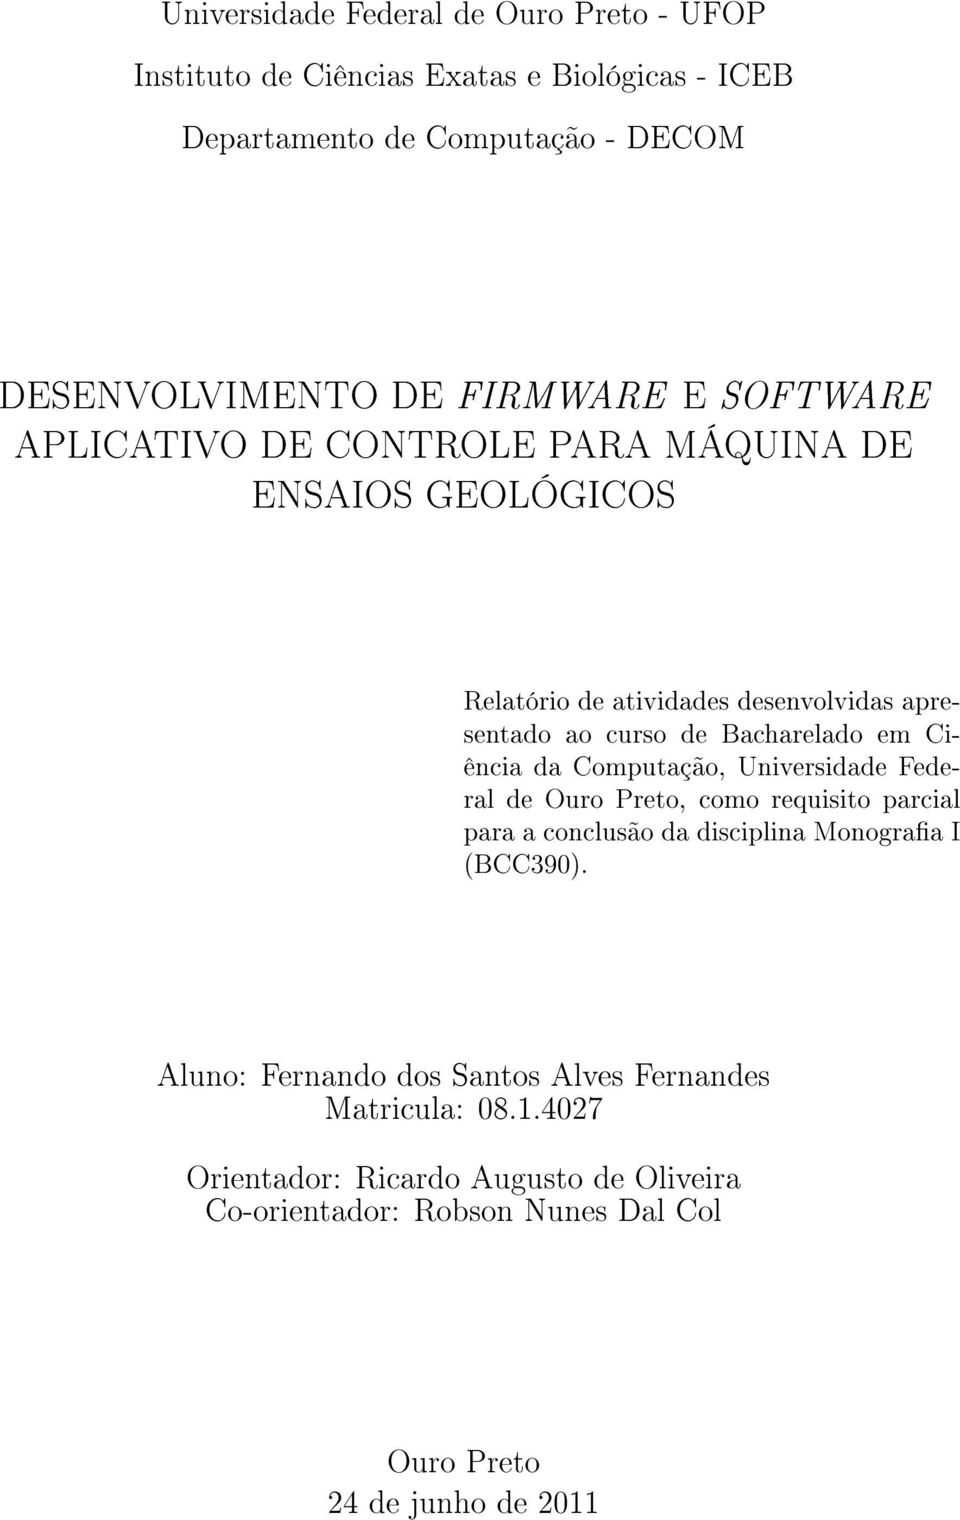 Bacharelado em Ciência da Computação, Universidade Federal de Ouro Preto, como requisito parcial para a conclusão da disciplina Monograa I (BCC390).